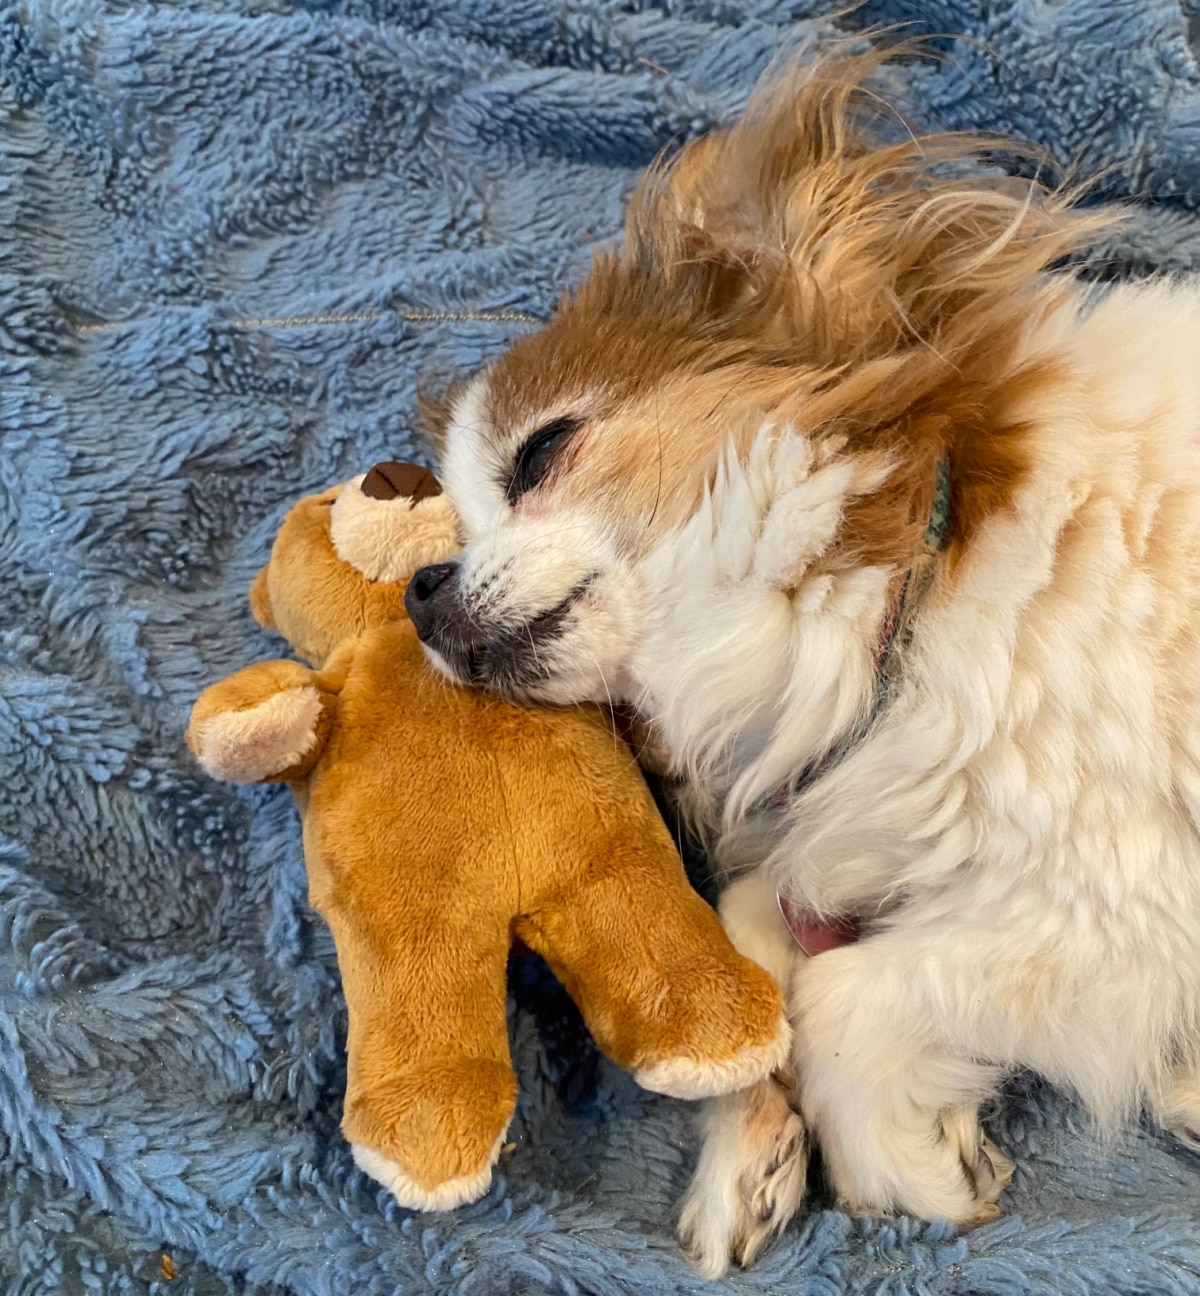 dog sleeping with plush teddy bear toy